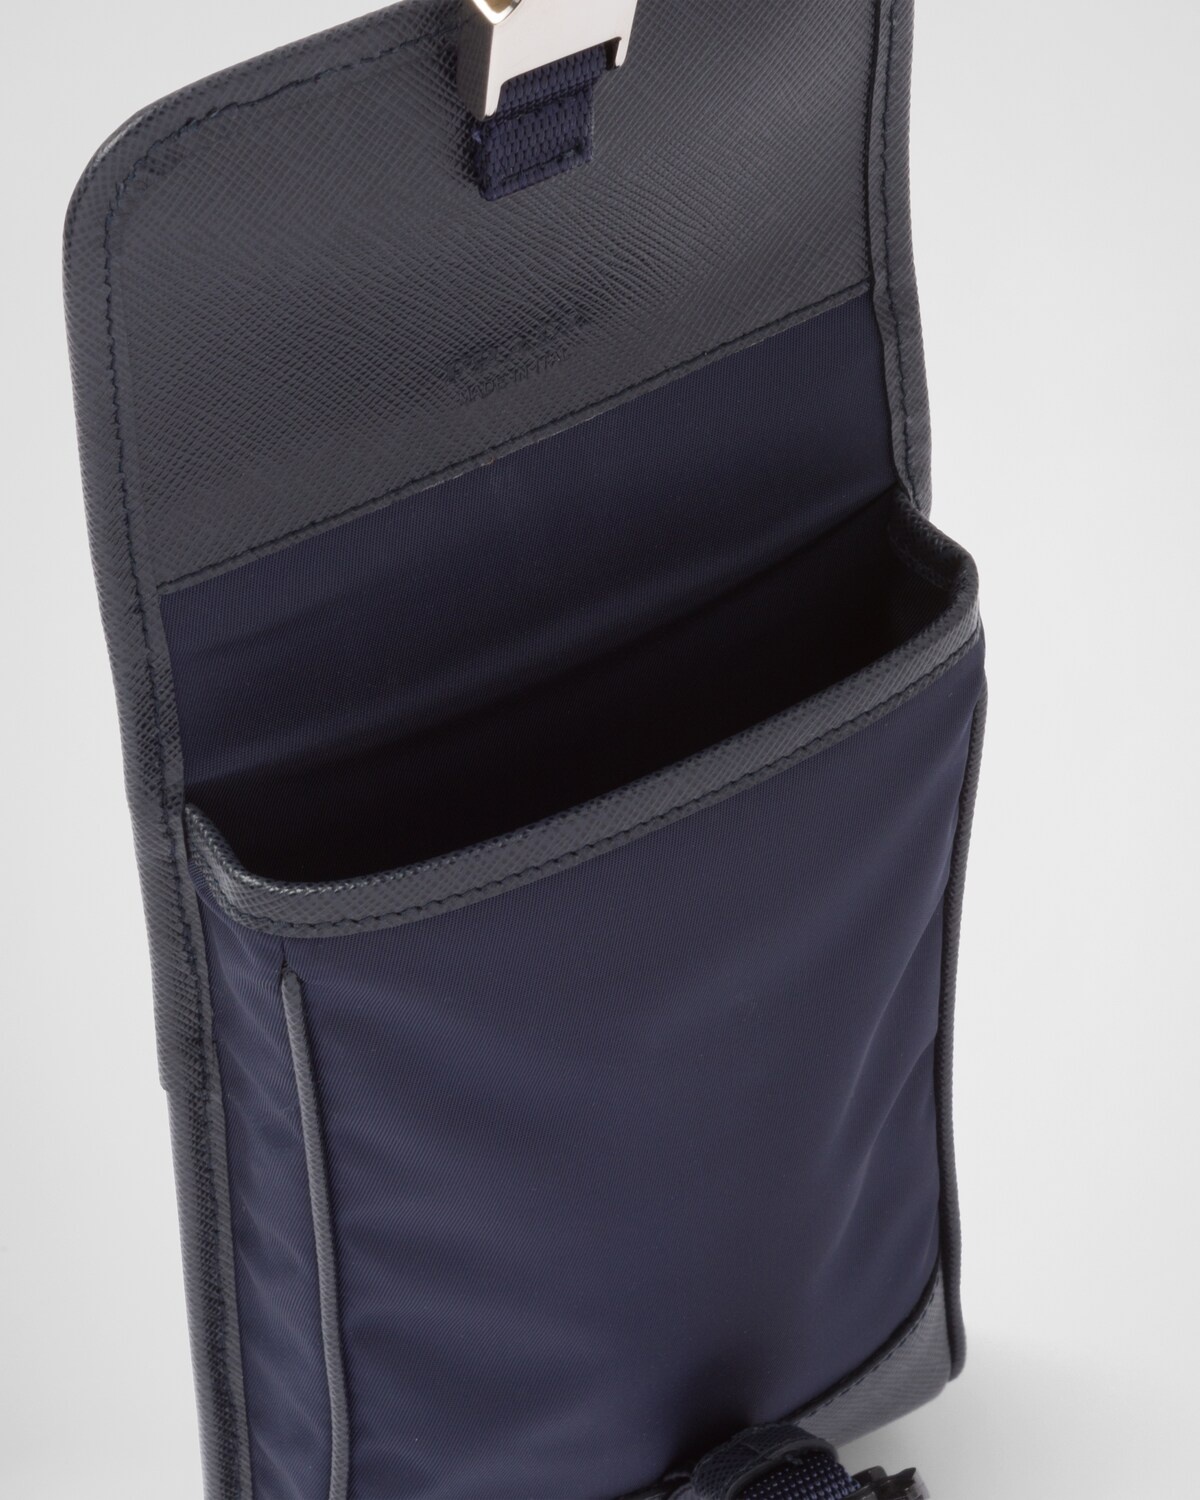 Re-Nylon and Saffiano leather smartphone case - 5